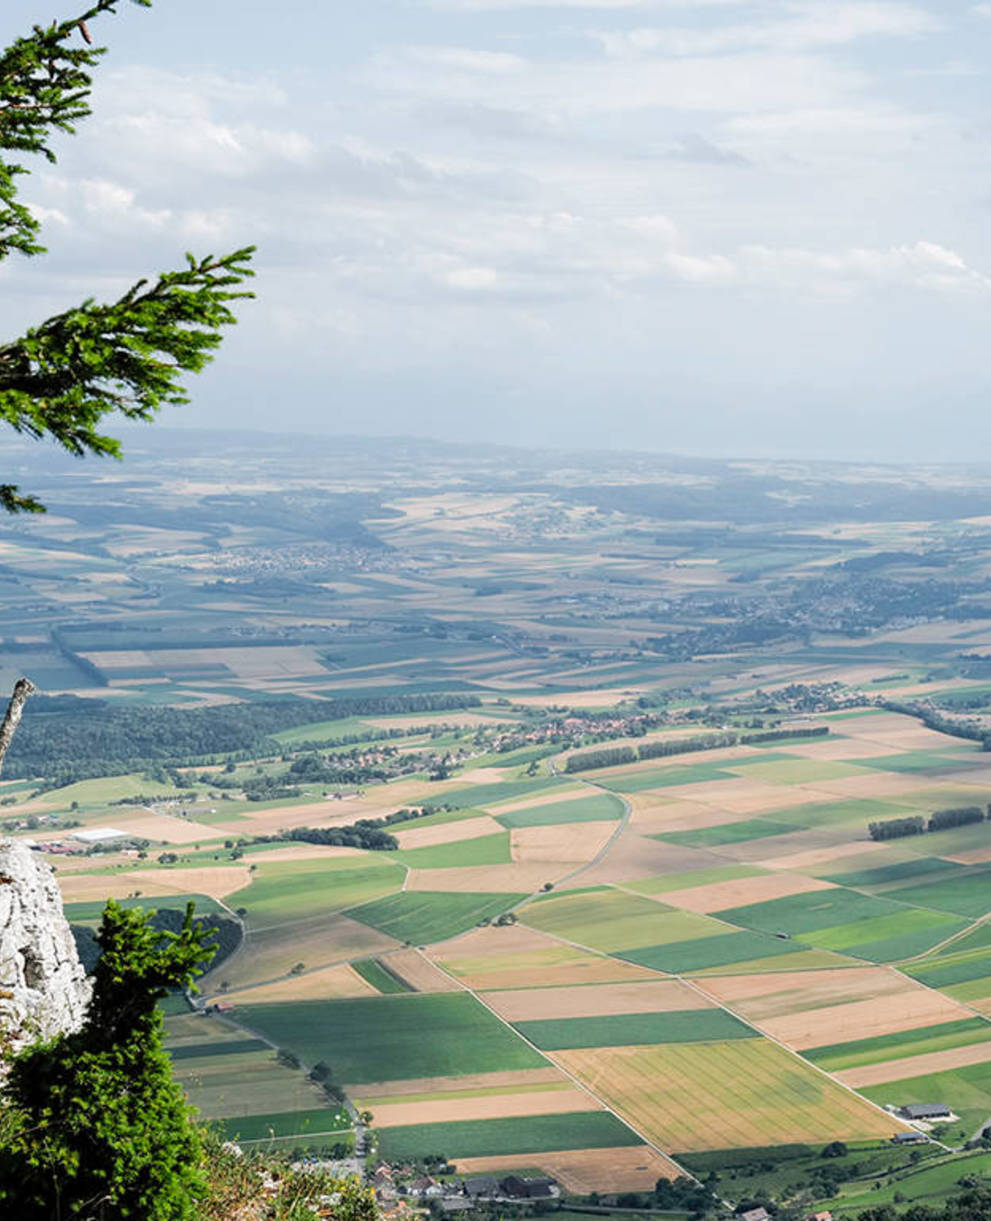 Immagine simbolica per la pianificazione territoriale - vista da una collina sul paesaggio con i suoi campi coltivati.